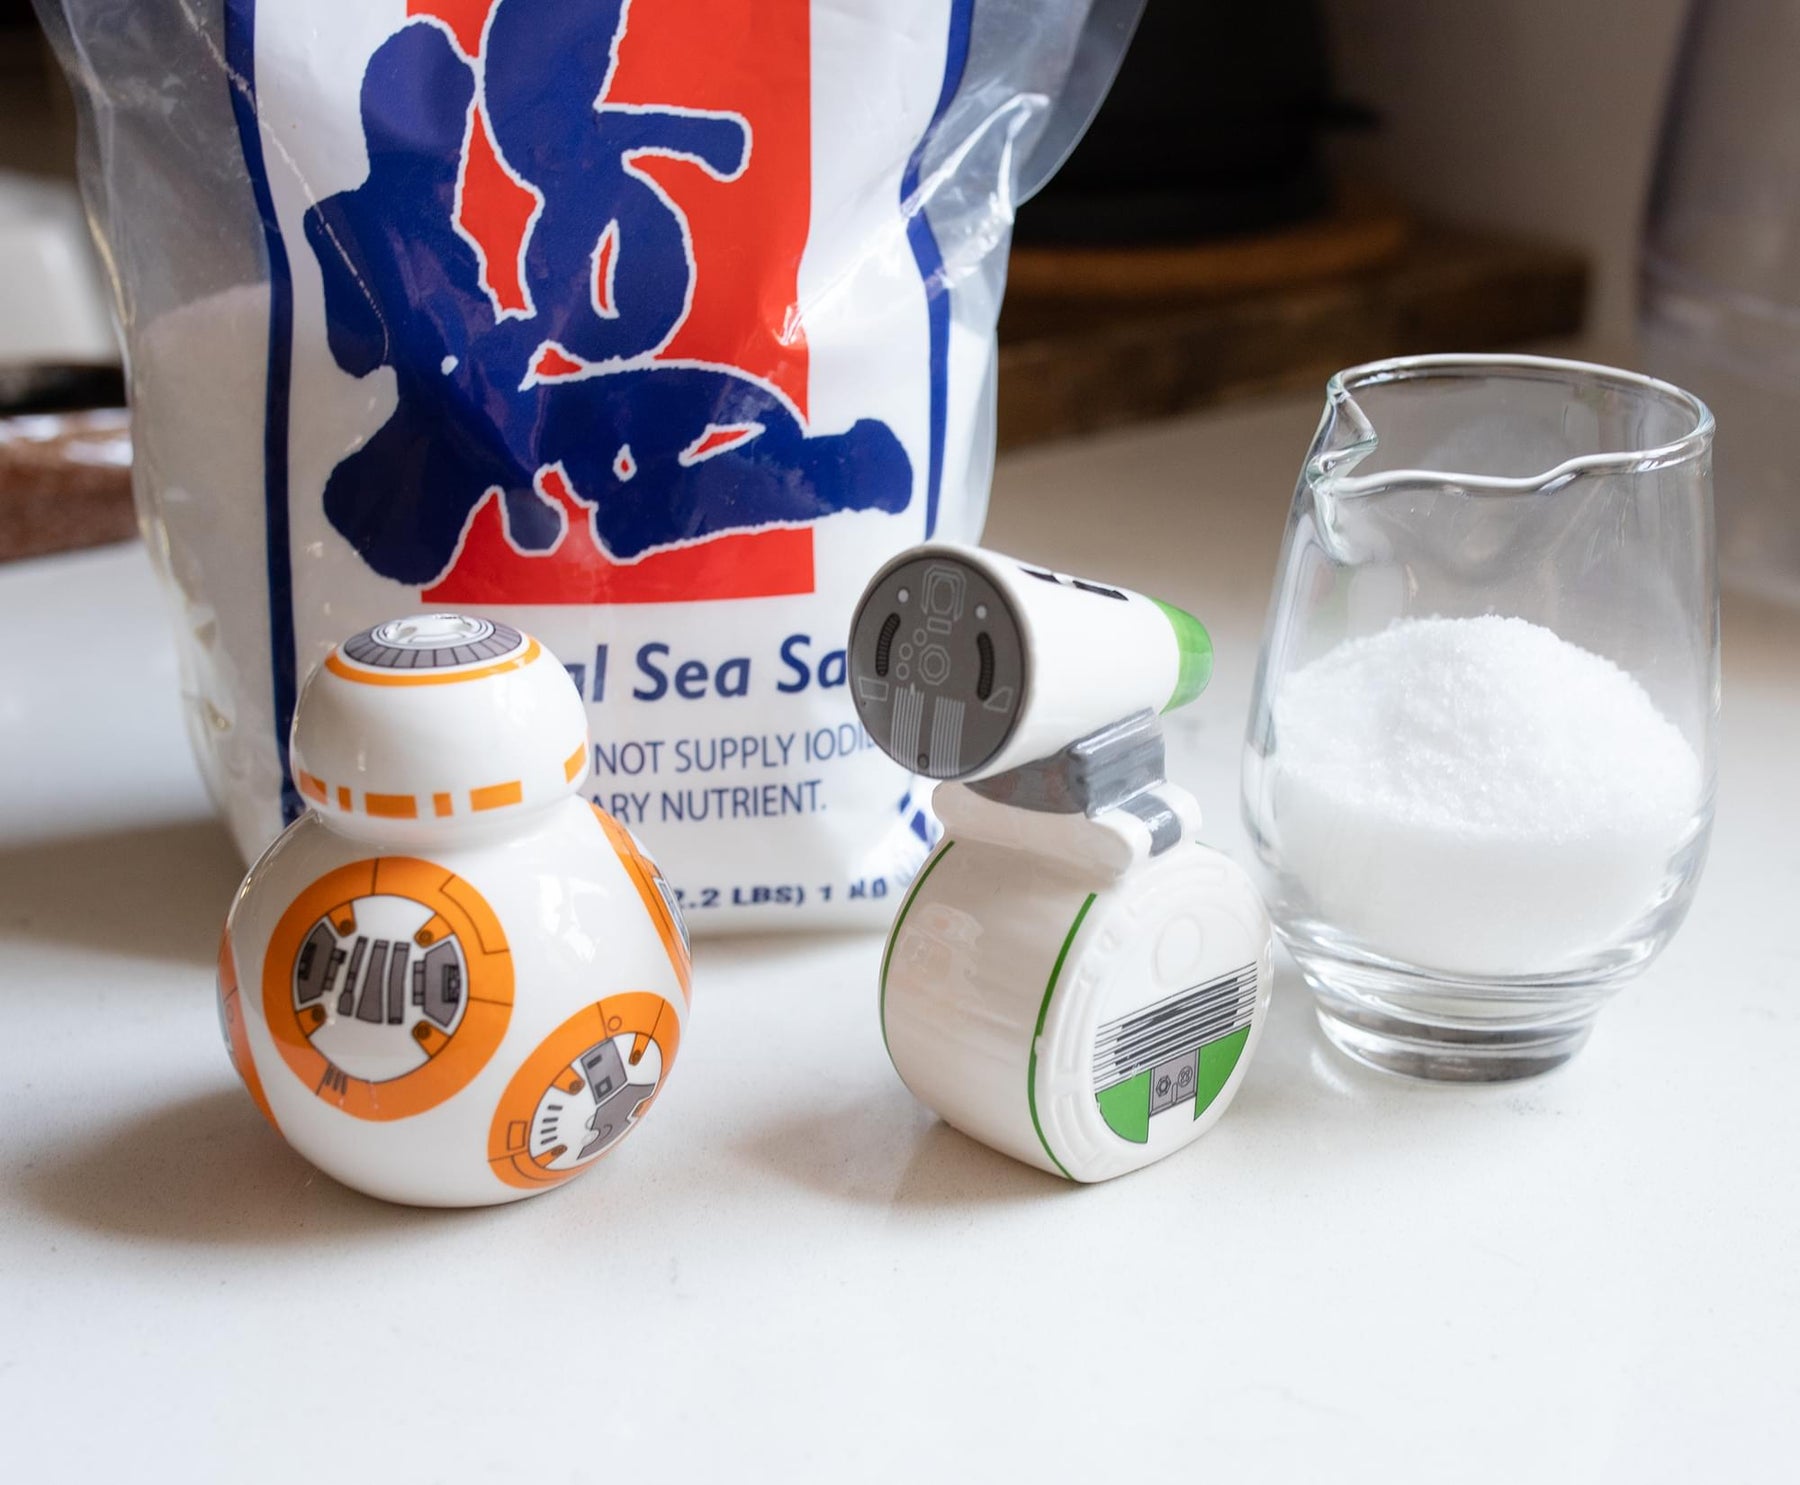 Star Wars BB-8 & R2-D2 Sculpted Salt & Pepper Set